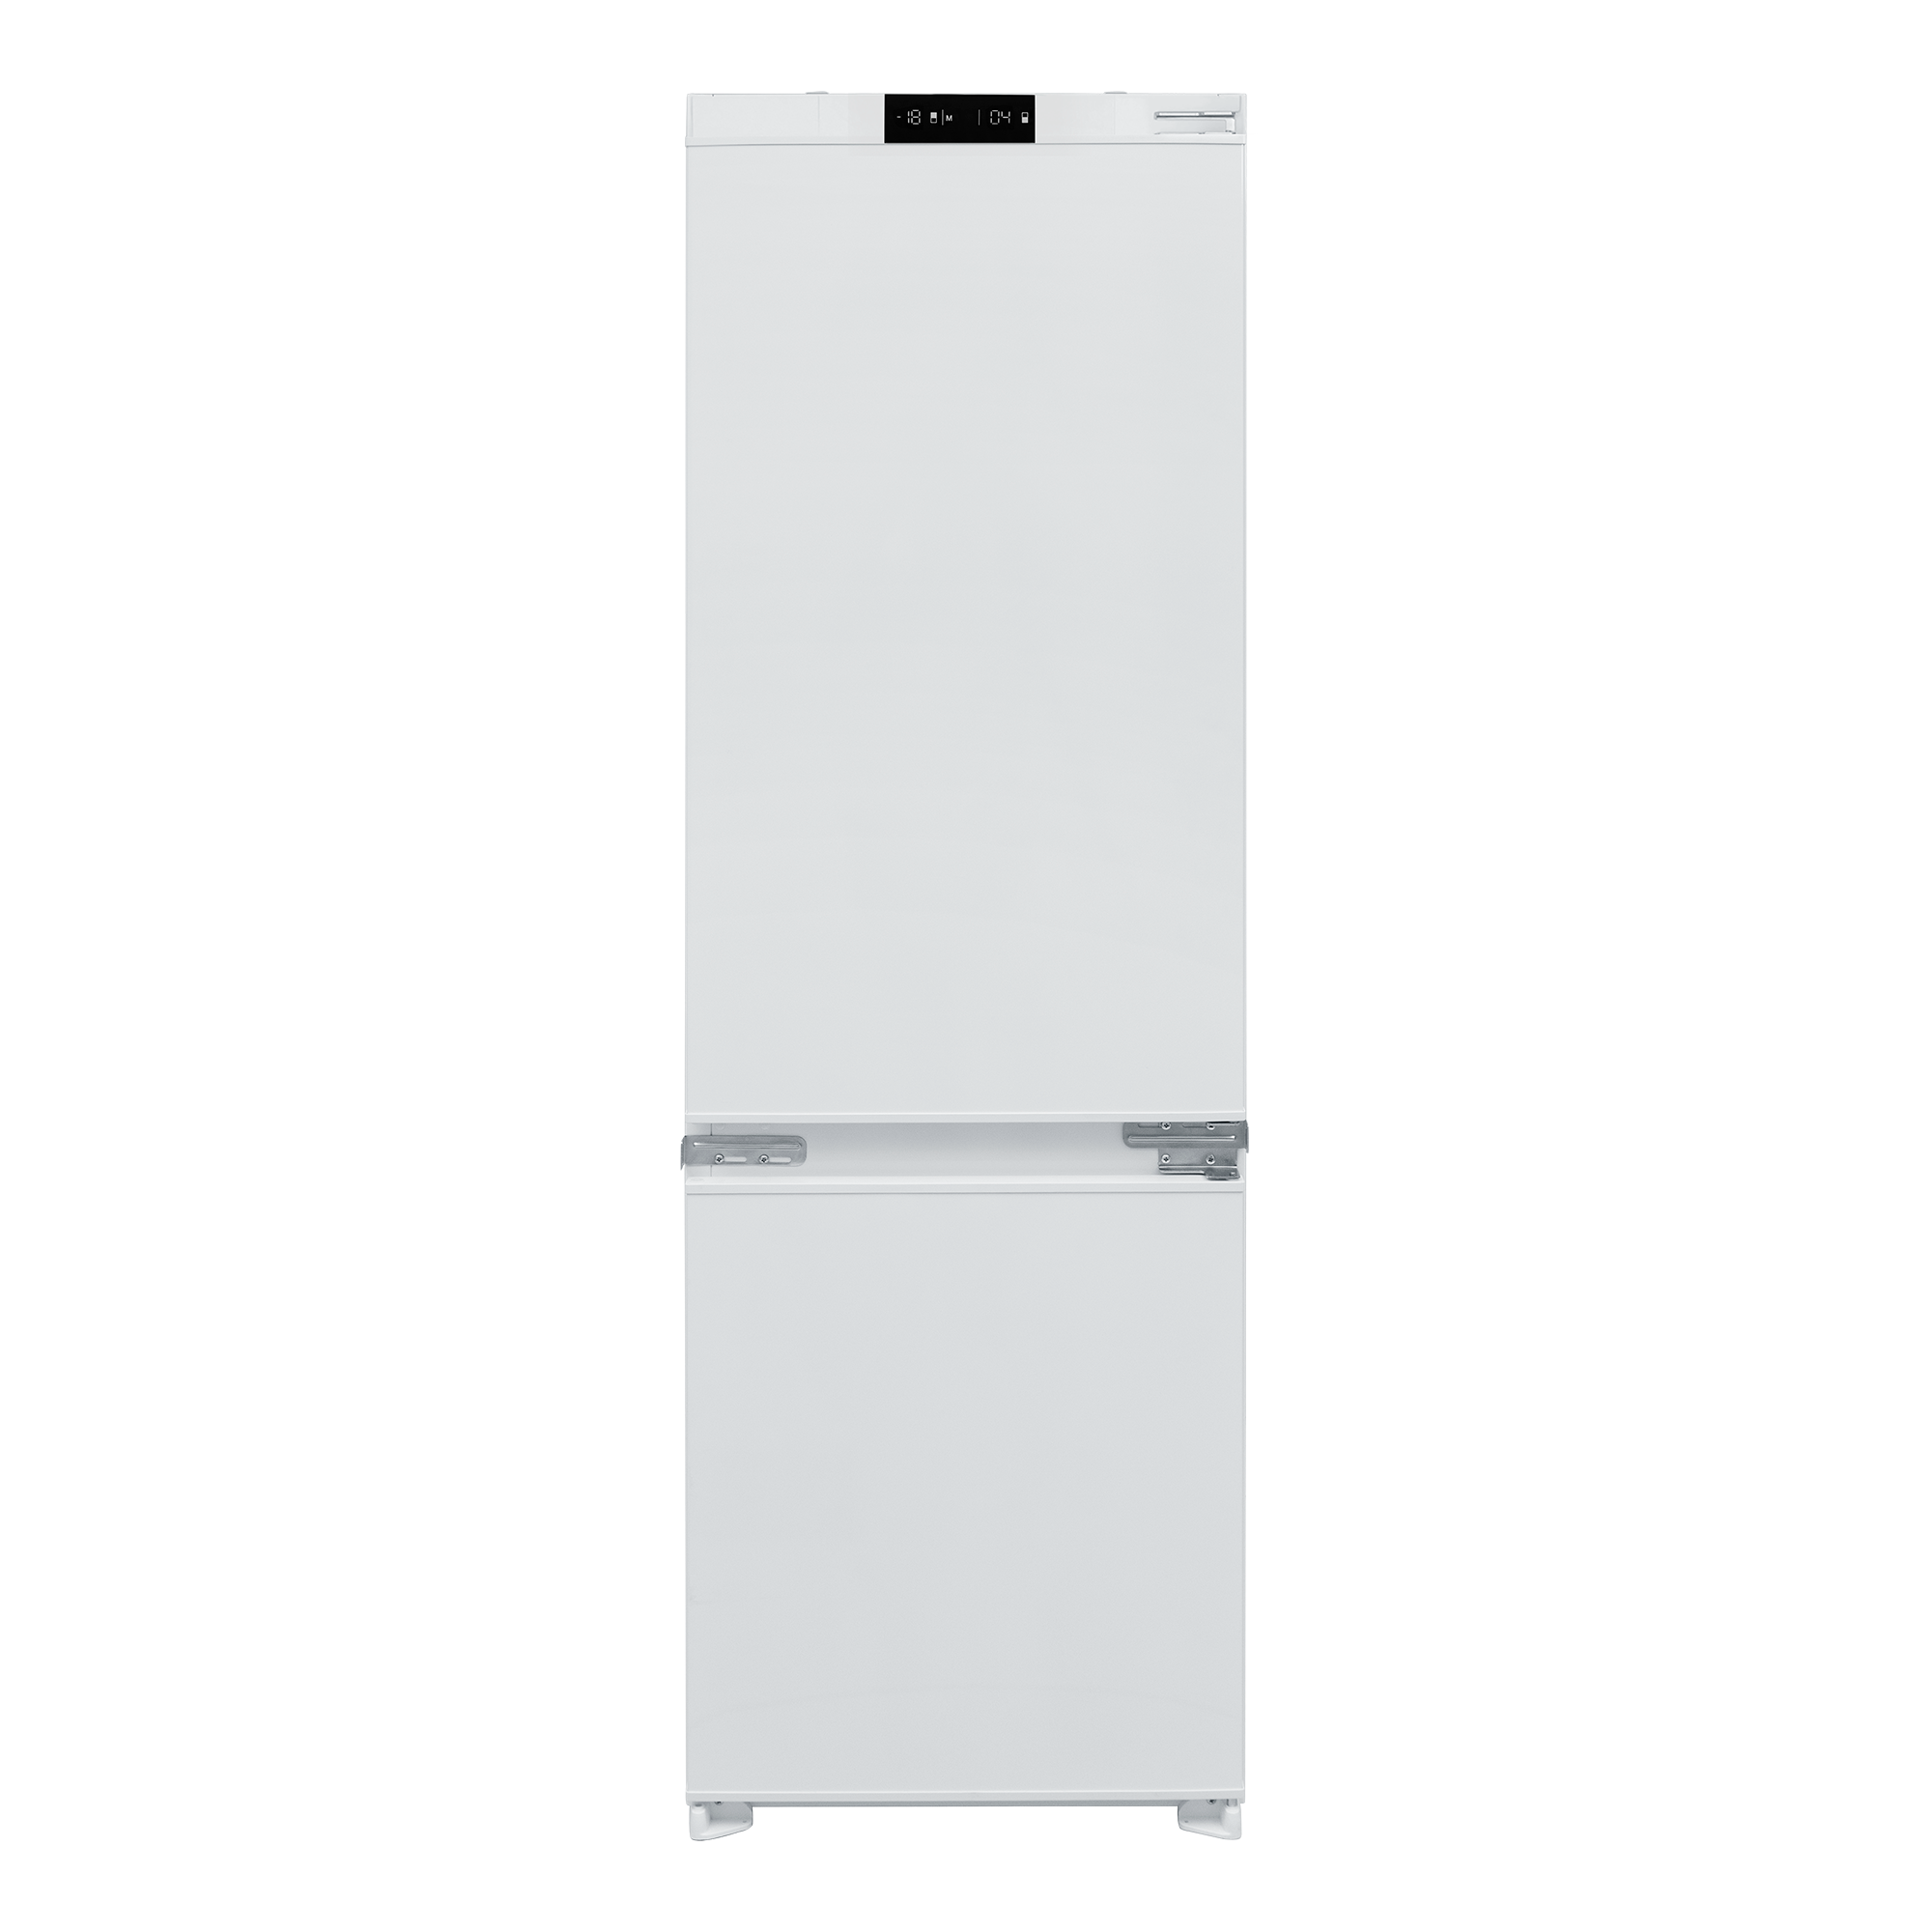 Встраиваемый холодильно-морозильный шкаф De Dietrich DRC1775EN